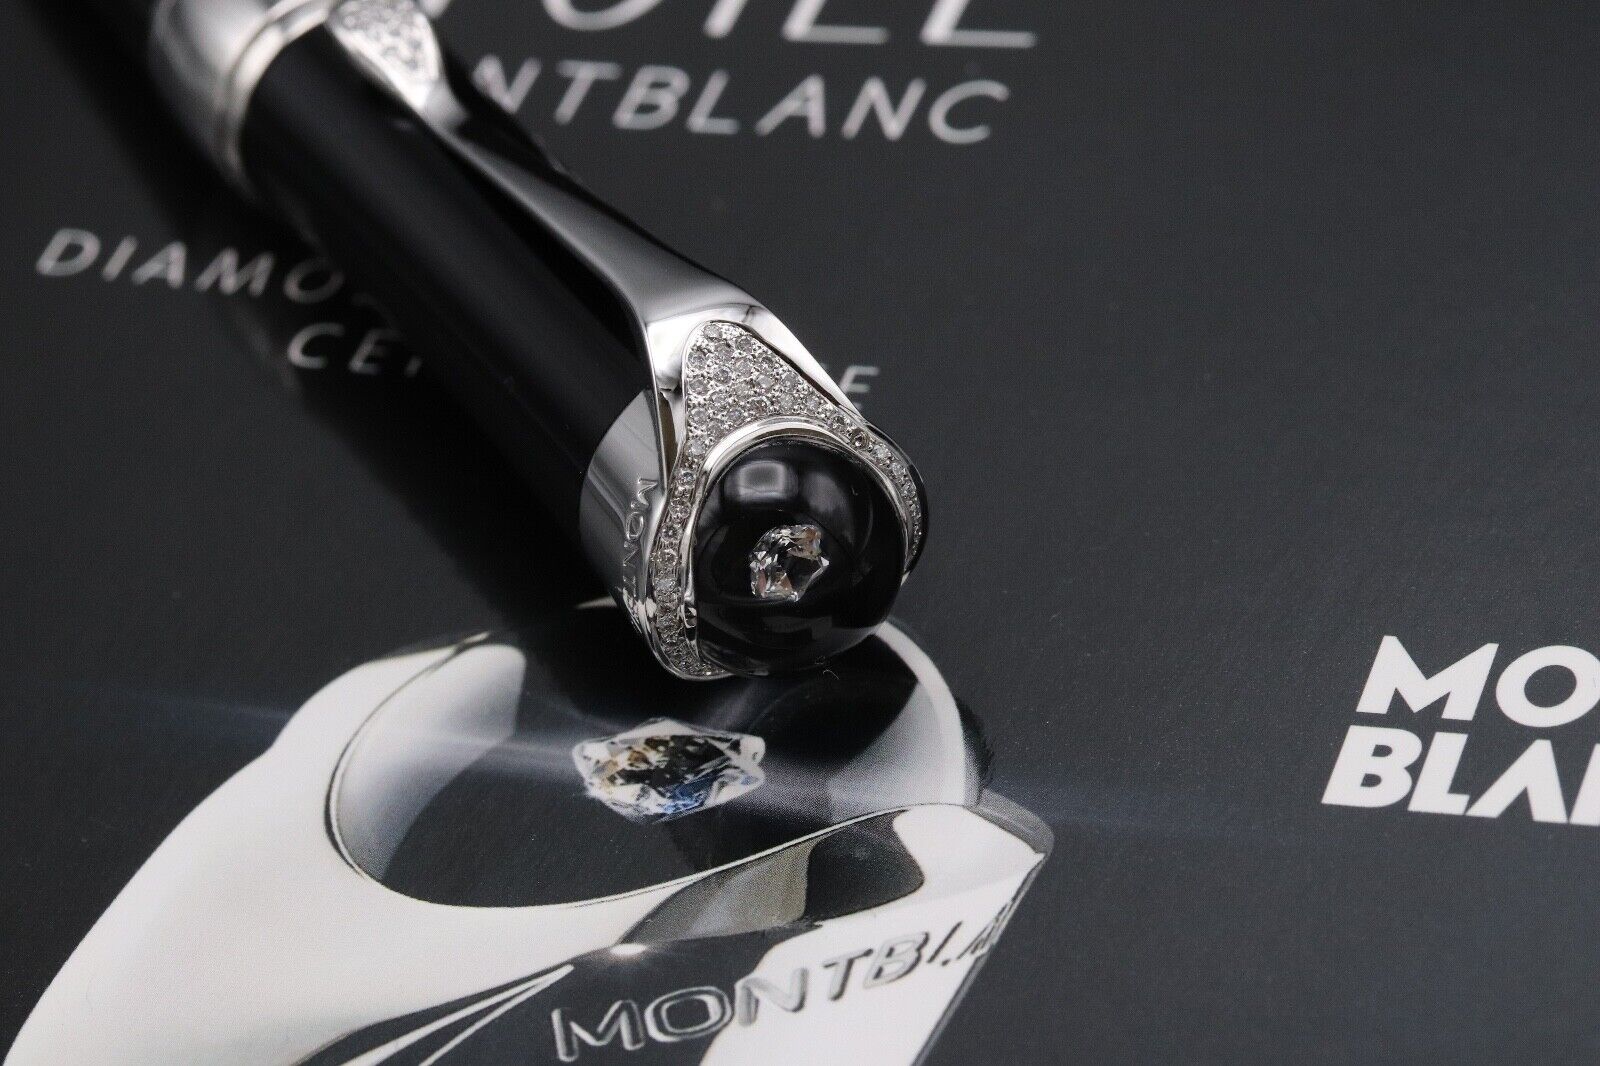 Montblanc Etoile De Precieuse Rollerball Pen - Diamond - Pen